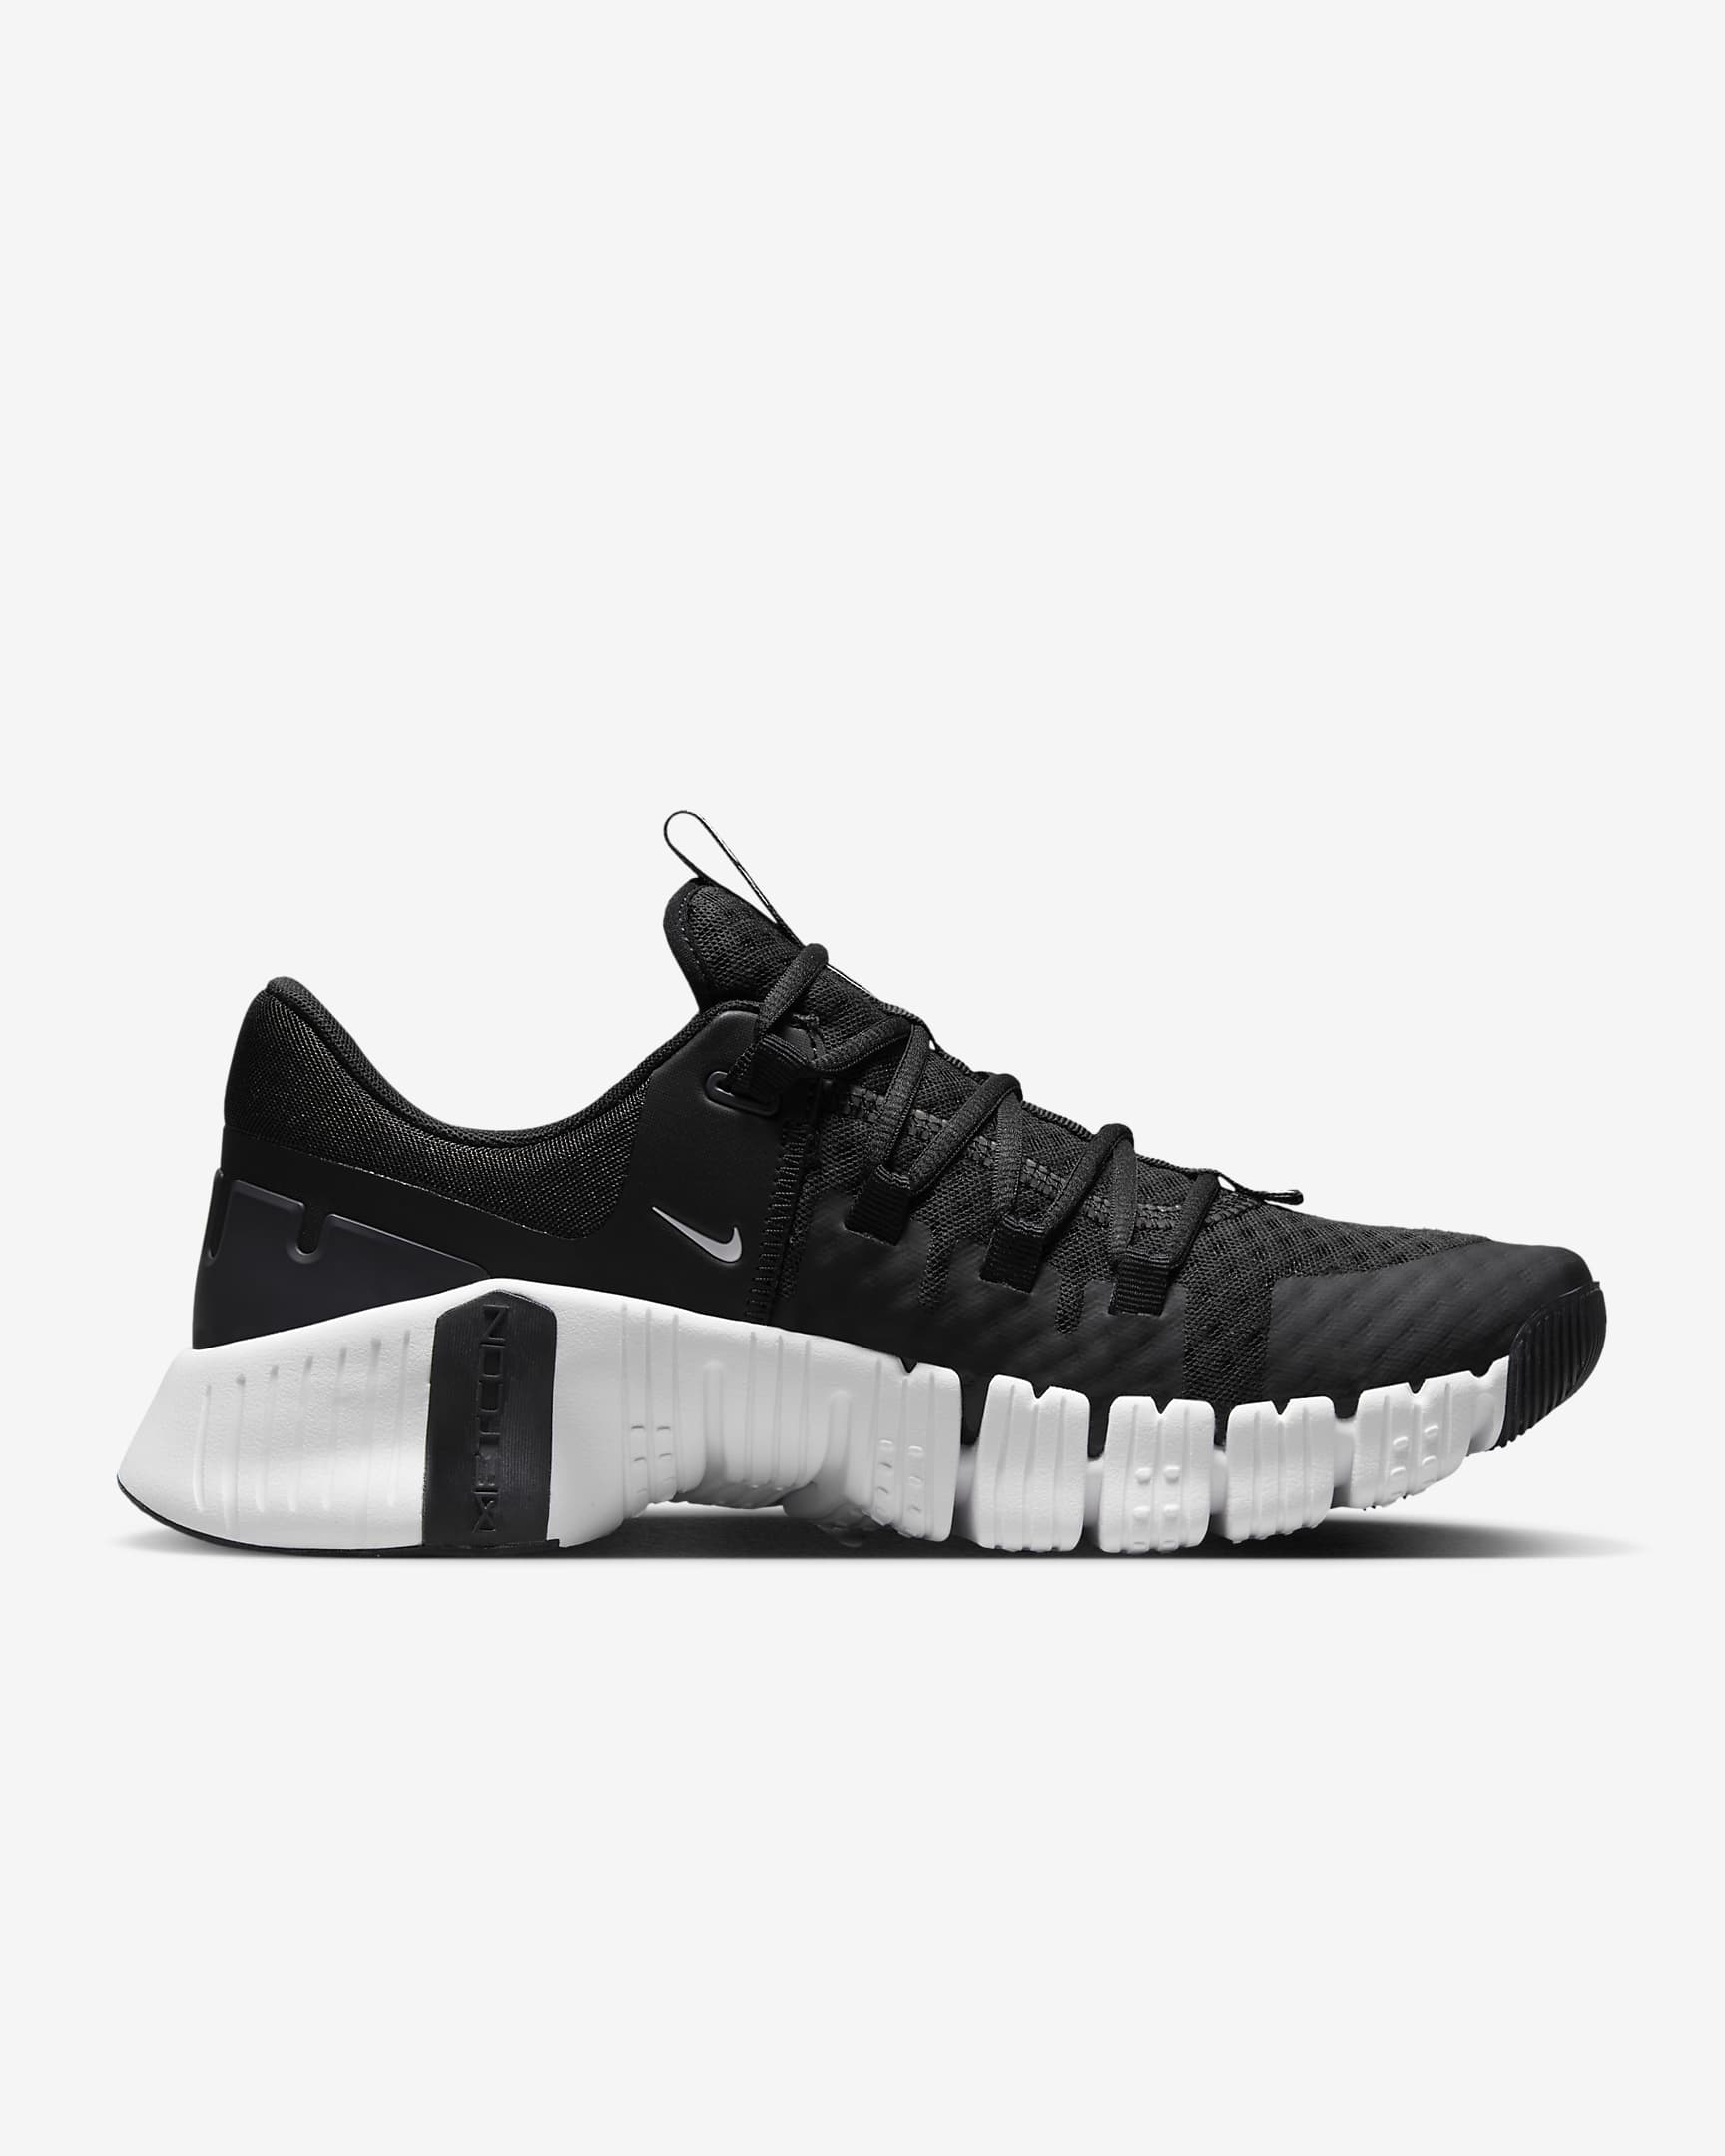 Nike Free Metcon 5 Men's Workout Shoes - Black/Anthracite/White